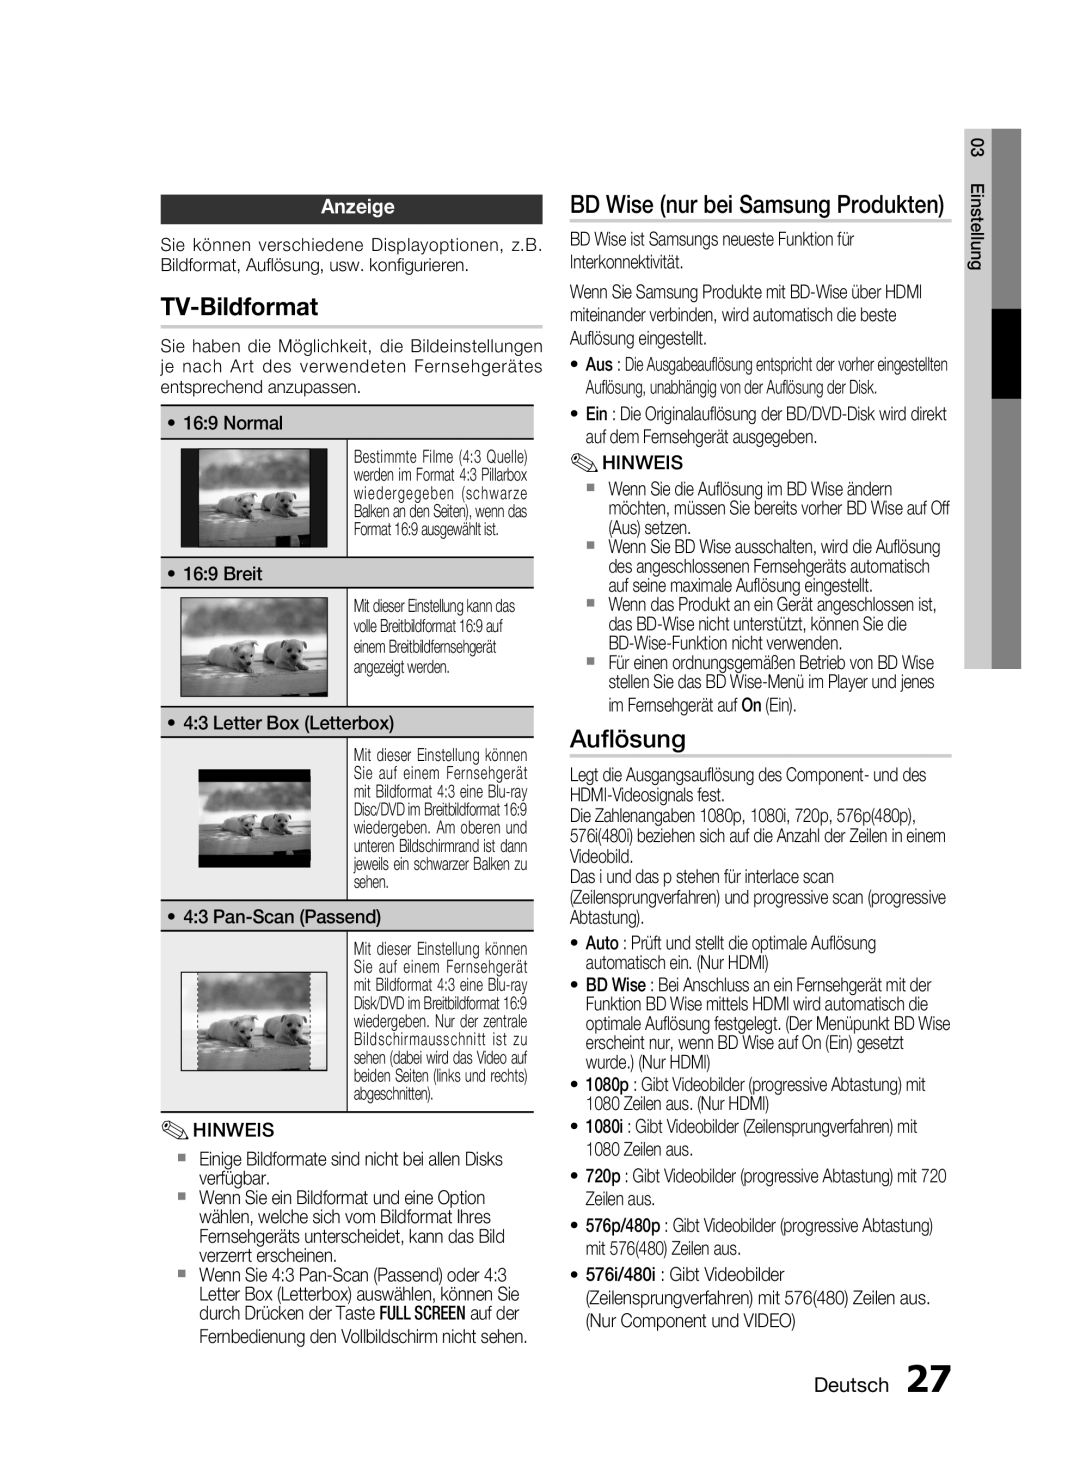 Samsung HT-C6200/XEF manual TV-Bildformat, Auﬂösung, BD Wise nur bei Samsung Produkten, Anzeige, Deutsch 